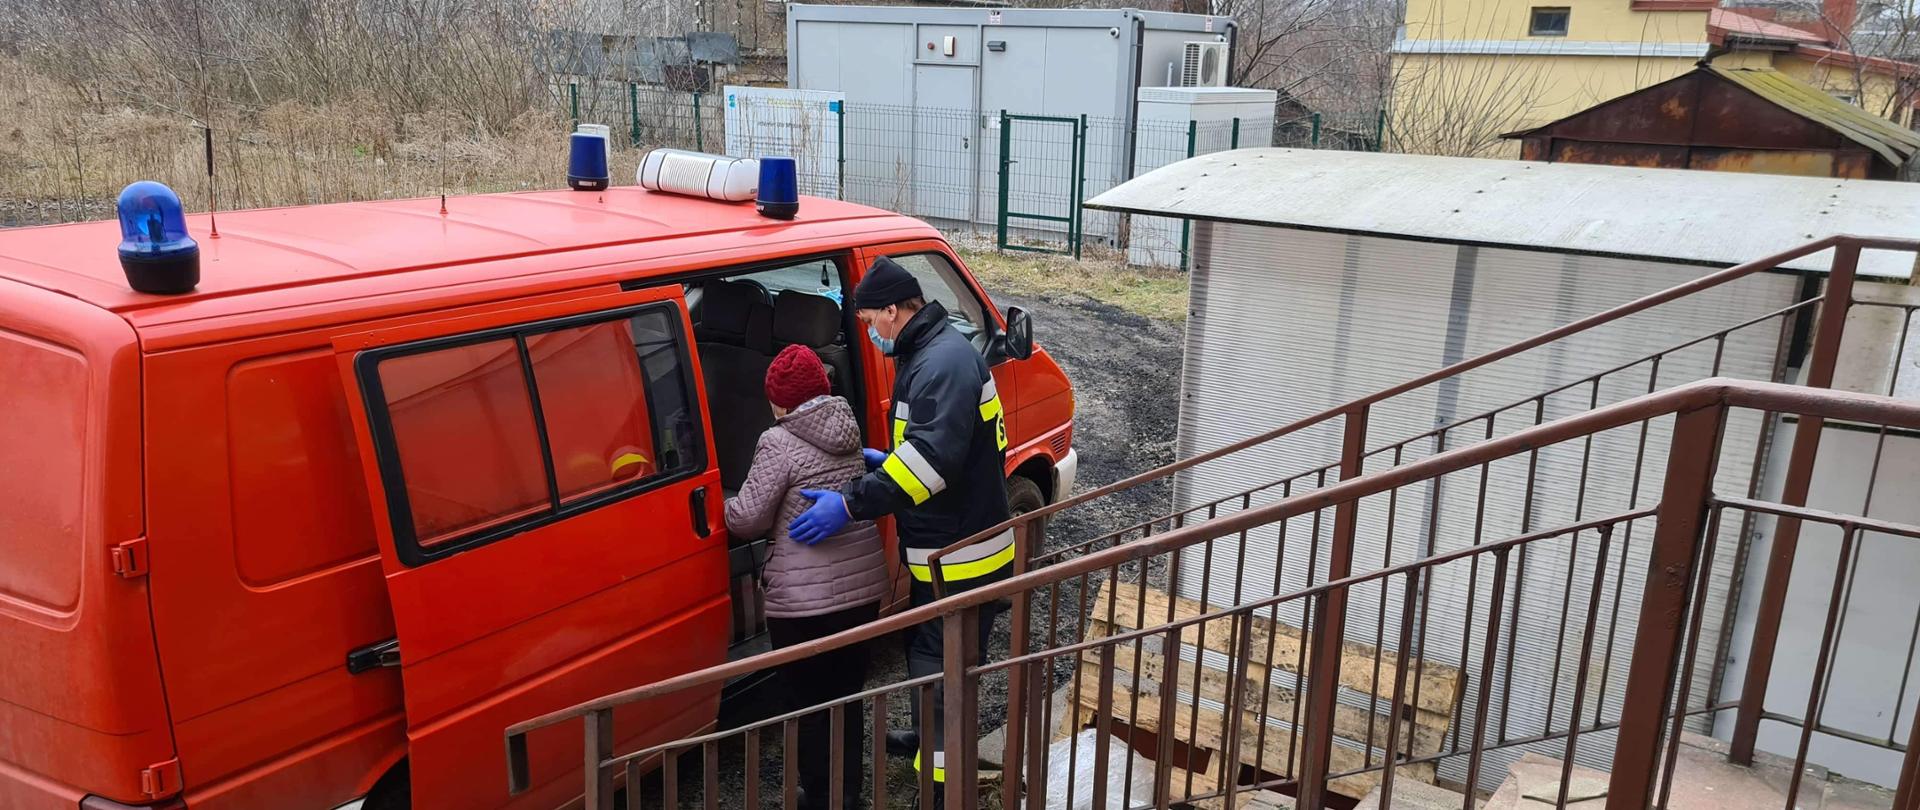 Strażak pomaga starszej kobiecie wejść do samochodu strażackiego.